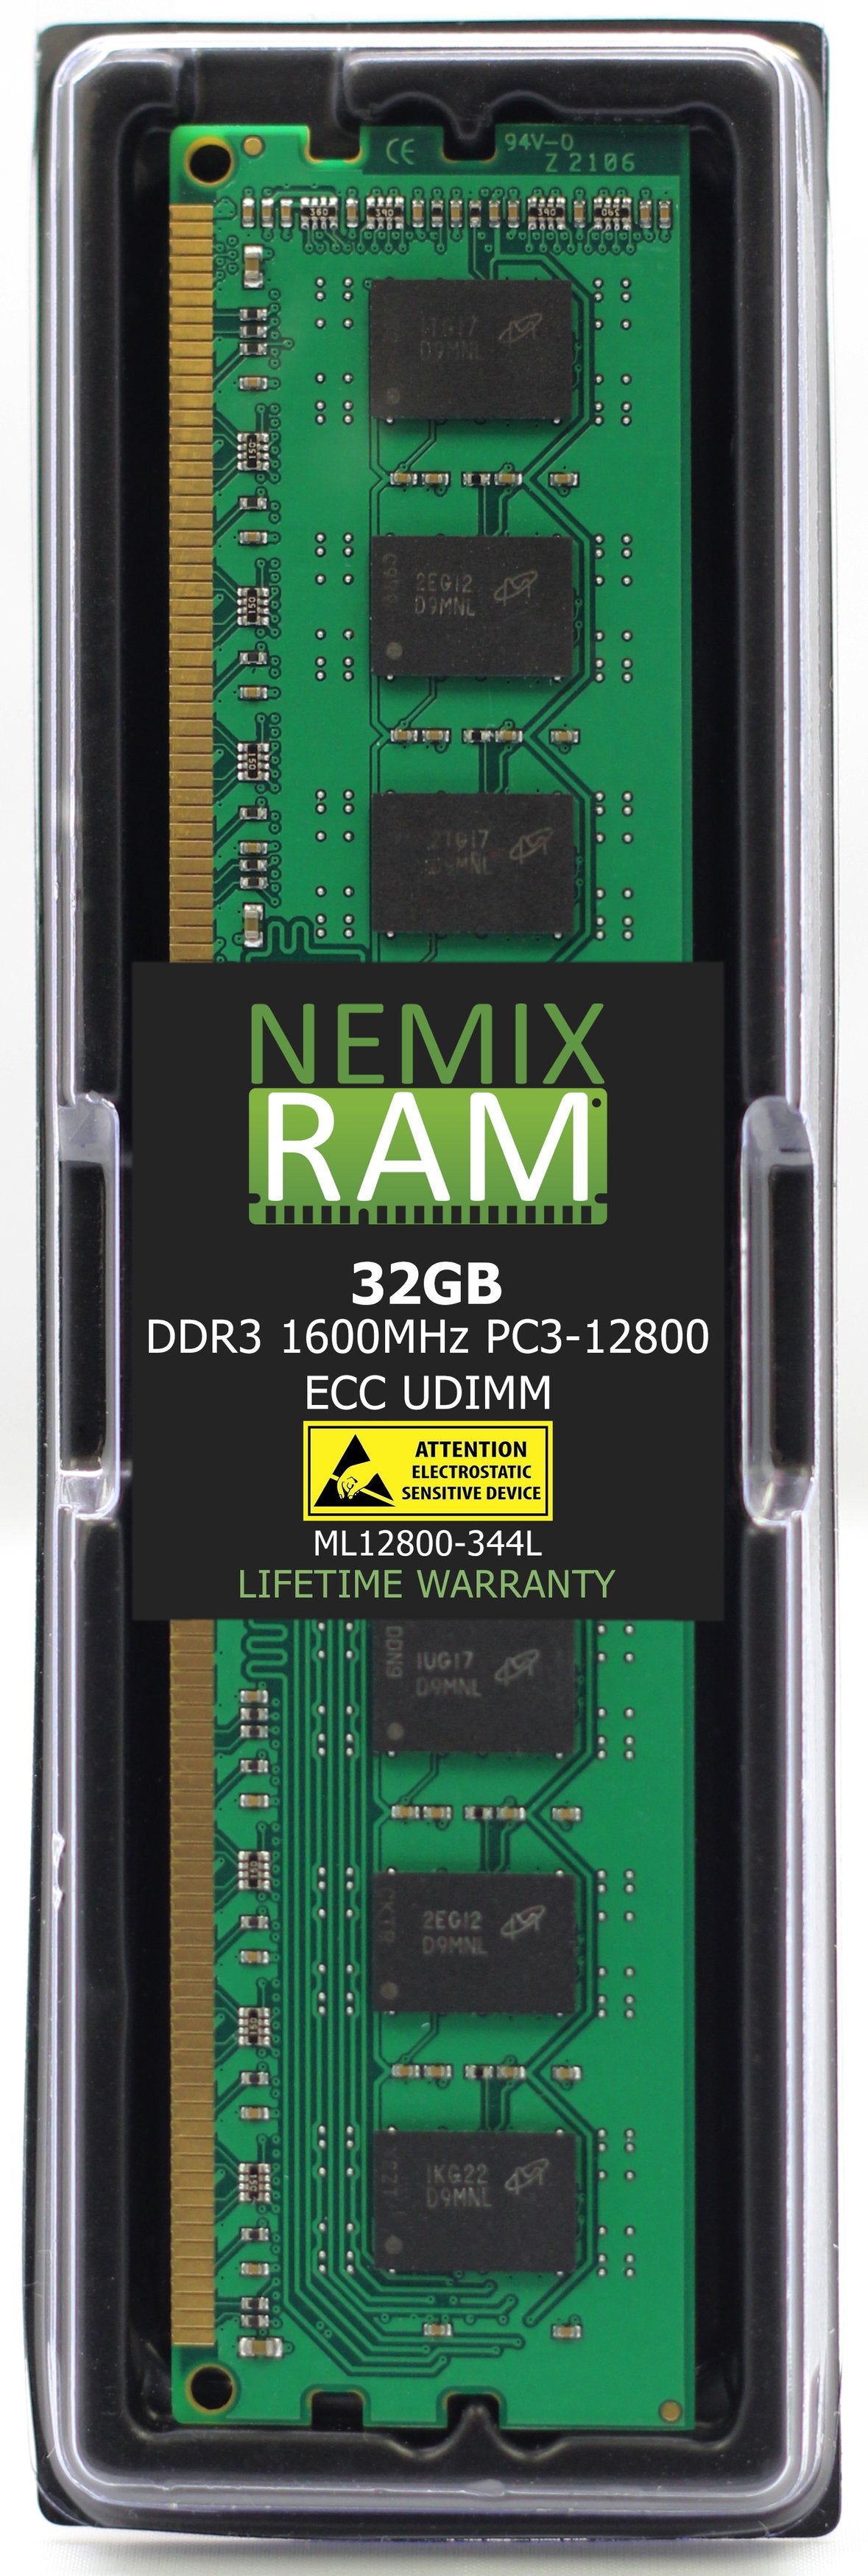 Hynix HMT84GL7DMR4A-PB 32GB DDR3 1600MHZ PC3-12800 LRDIMM Compatible Memory Module